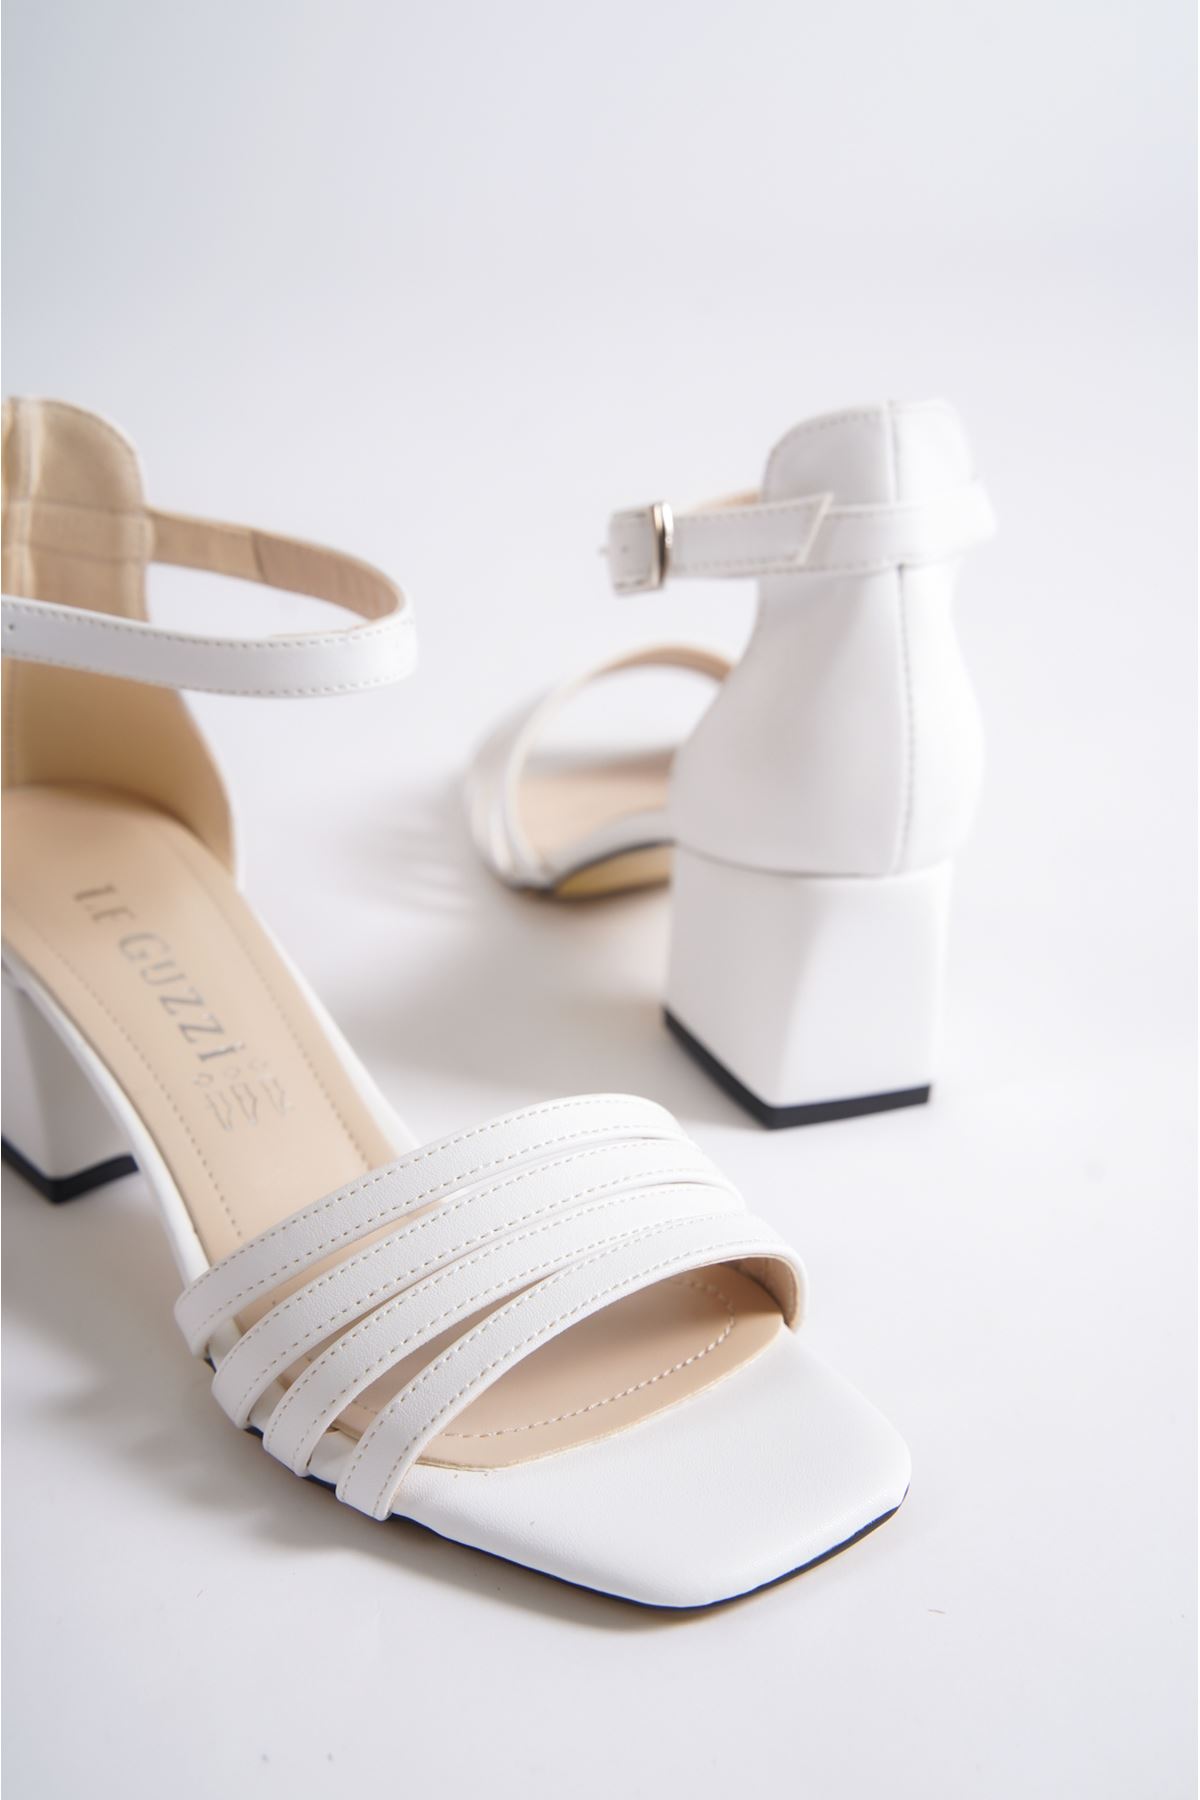 Diggory Beyaz Mat Deri Topuklu Kadın Ayakkabı